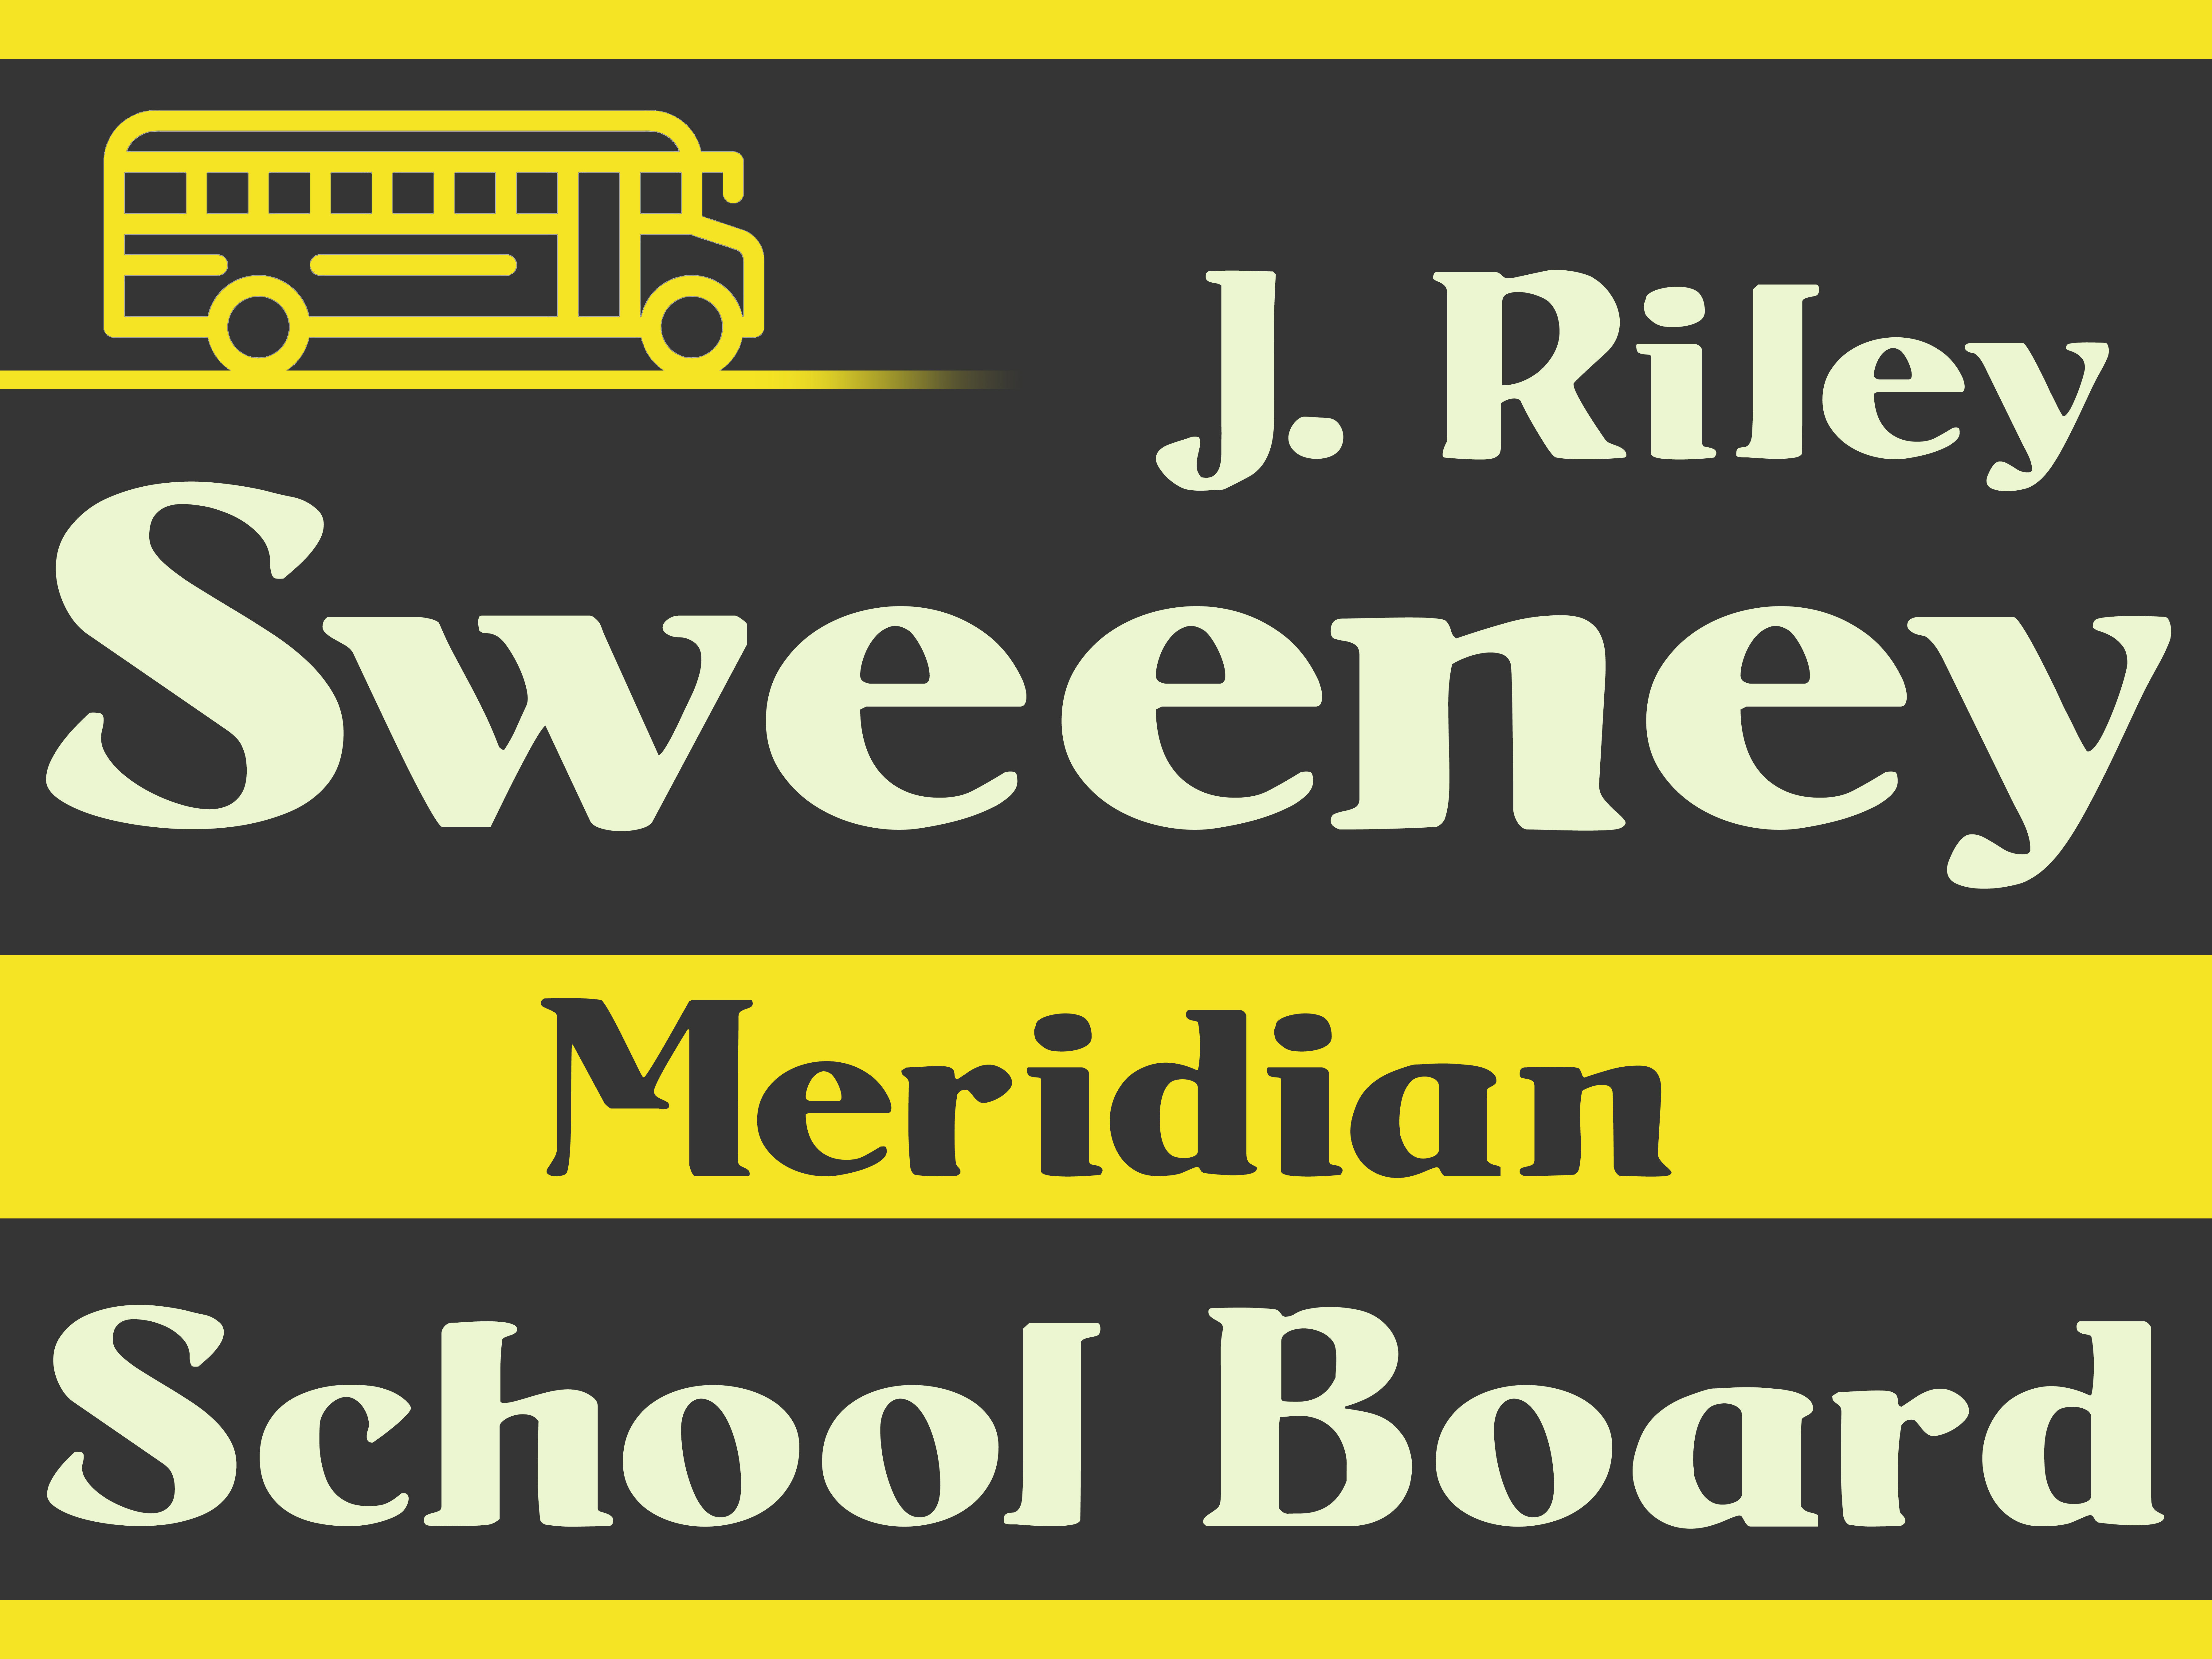 J. Riley Sweeney for Meridian School Board